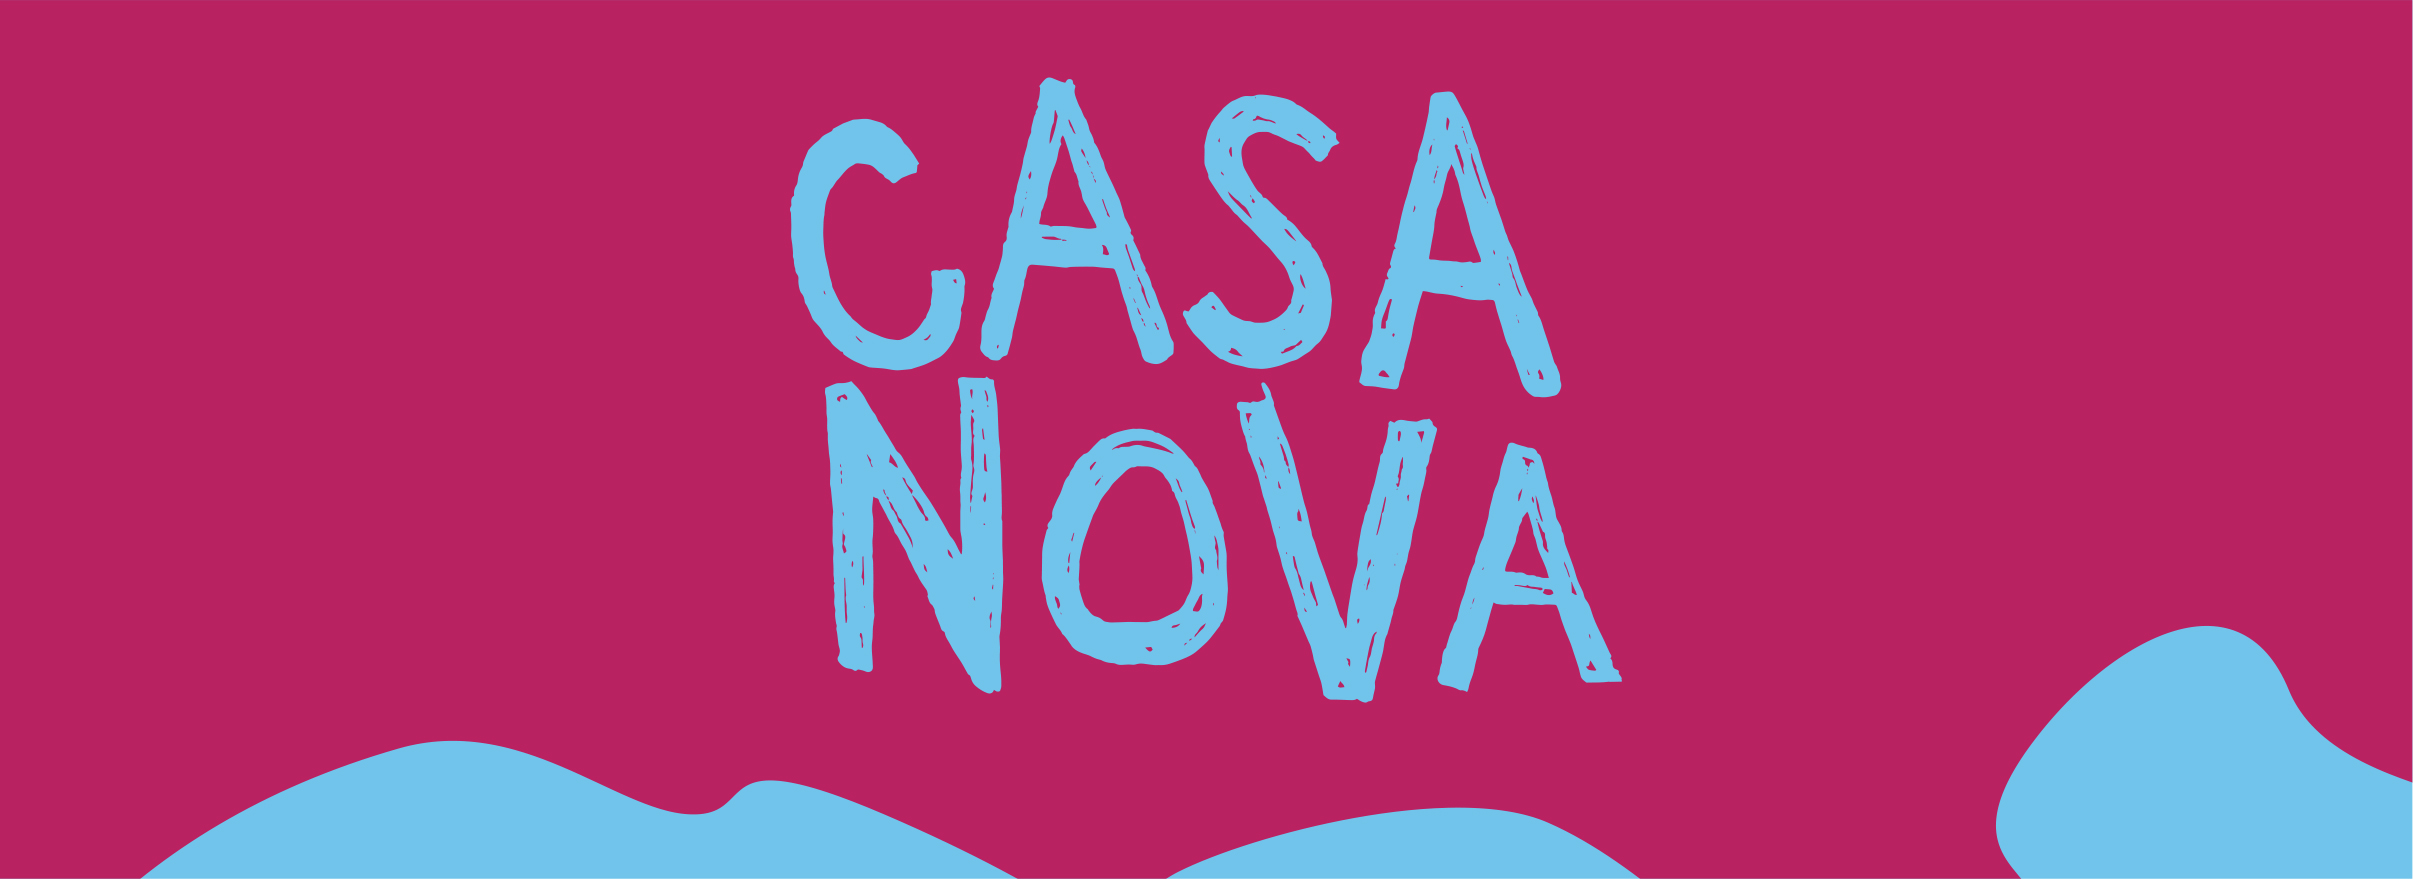 Casa Nova Facebook cover